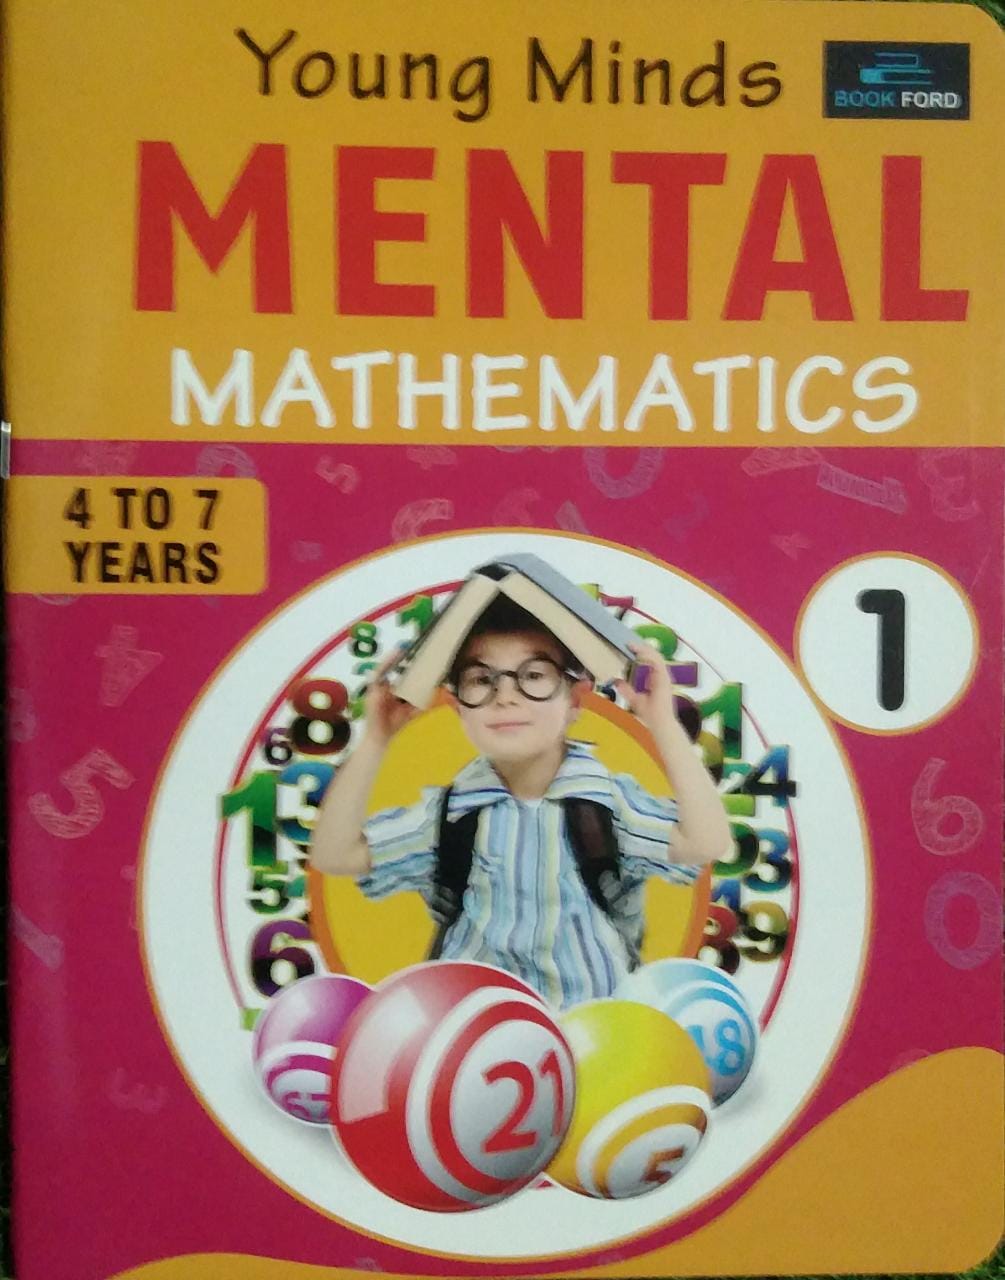 Young Minds Mental Mathematics